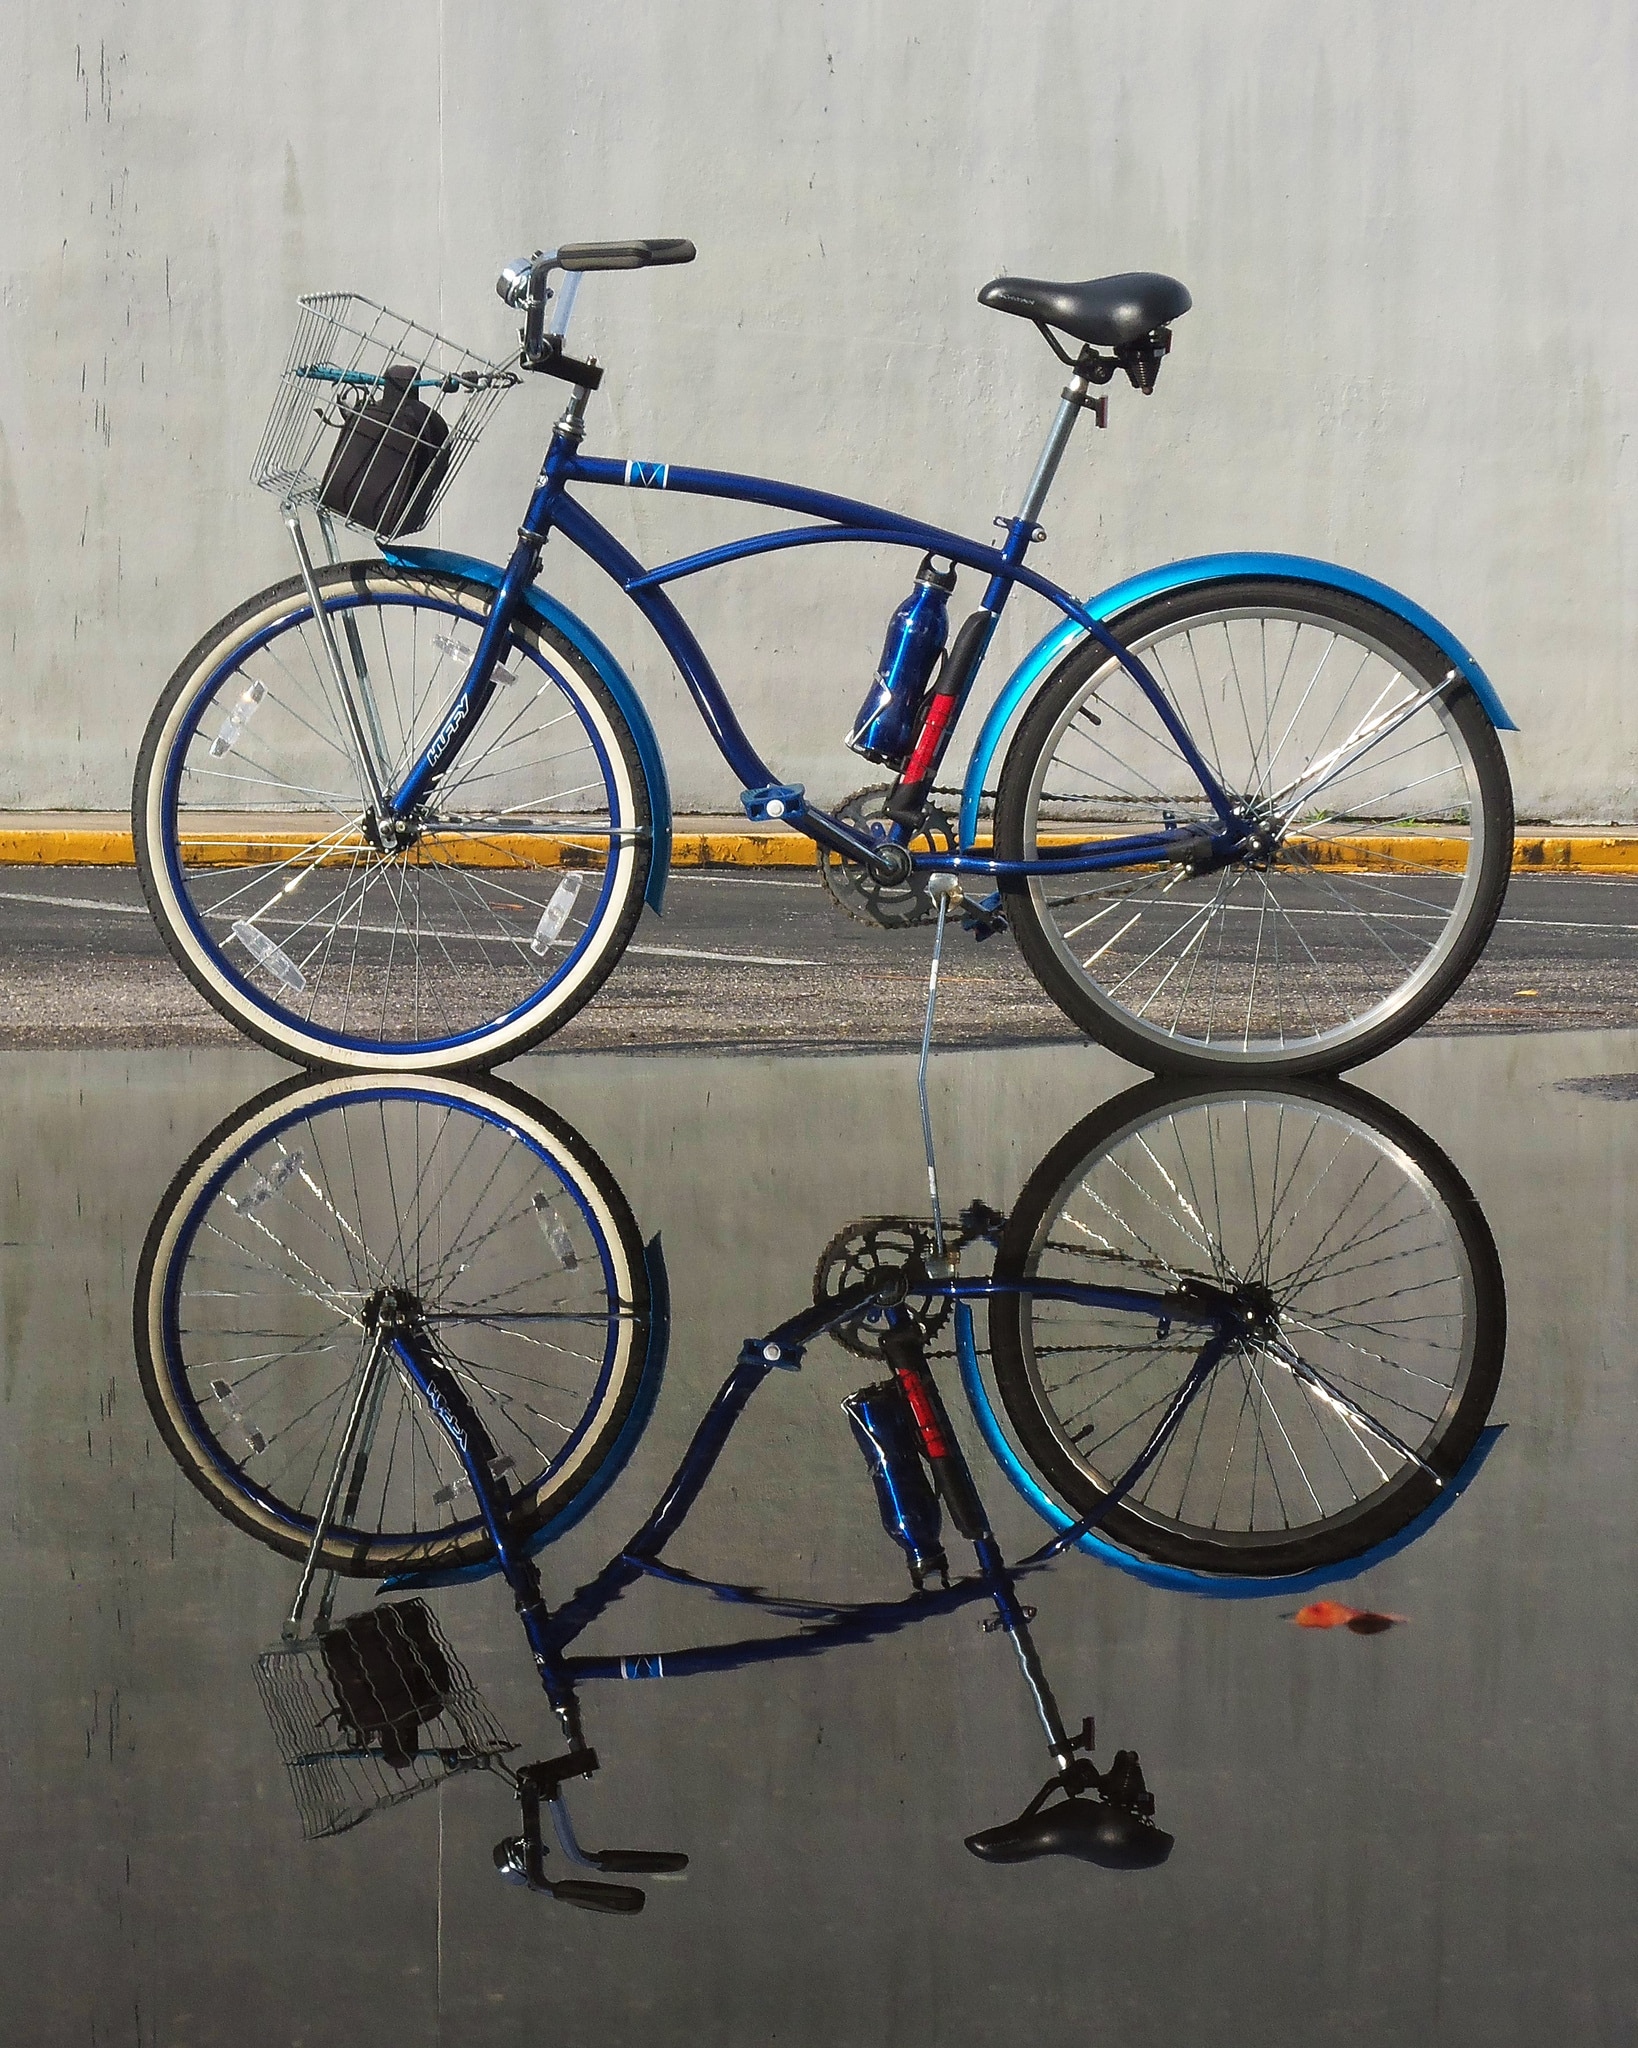 Bike reflection